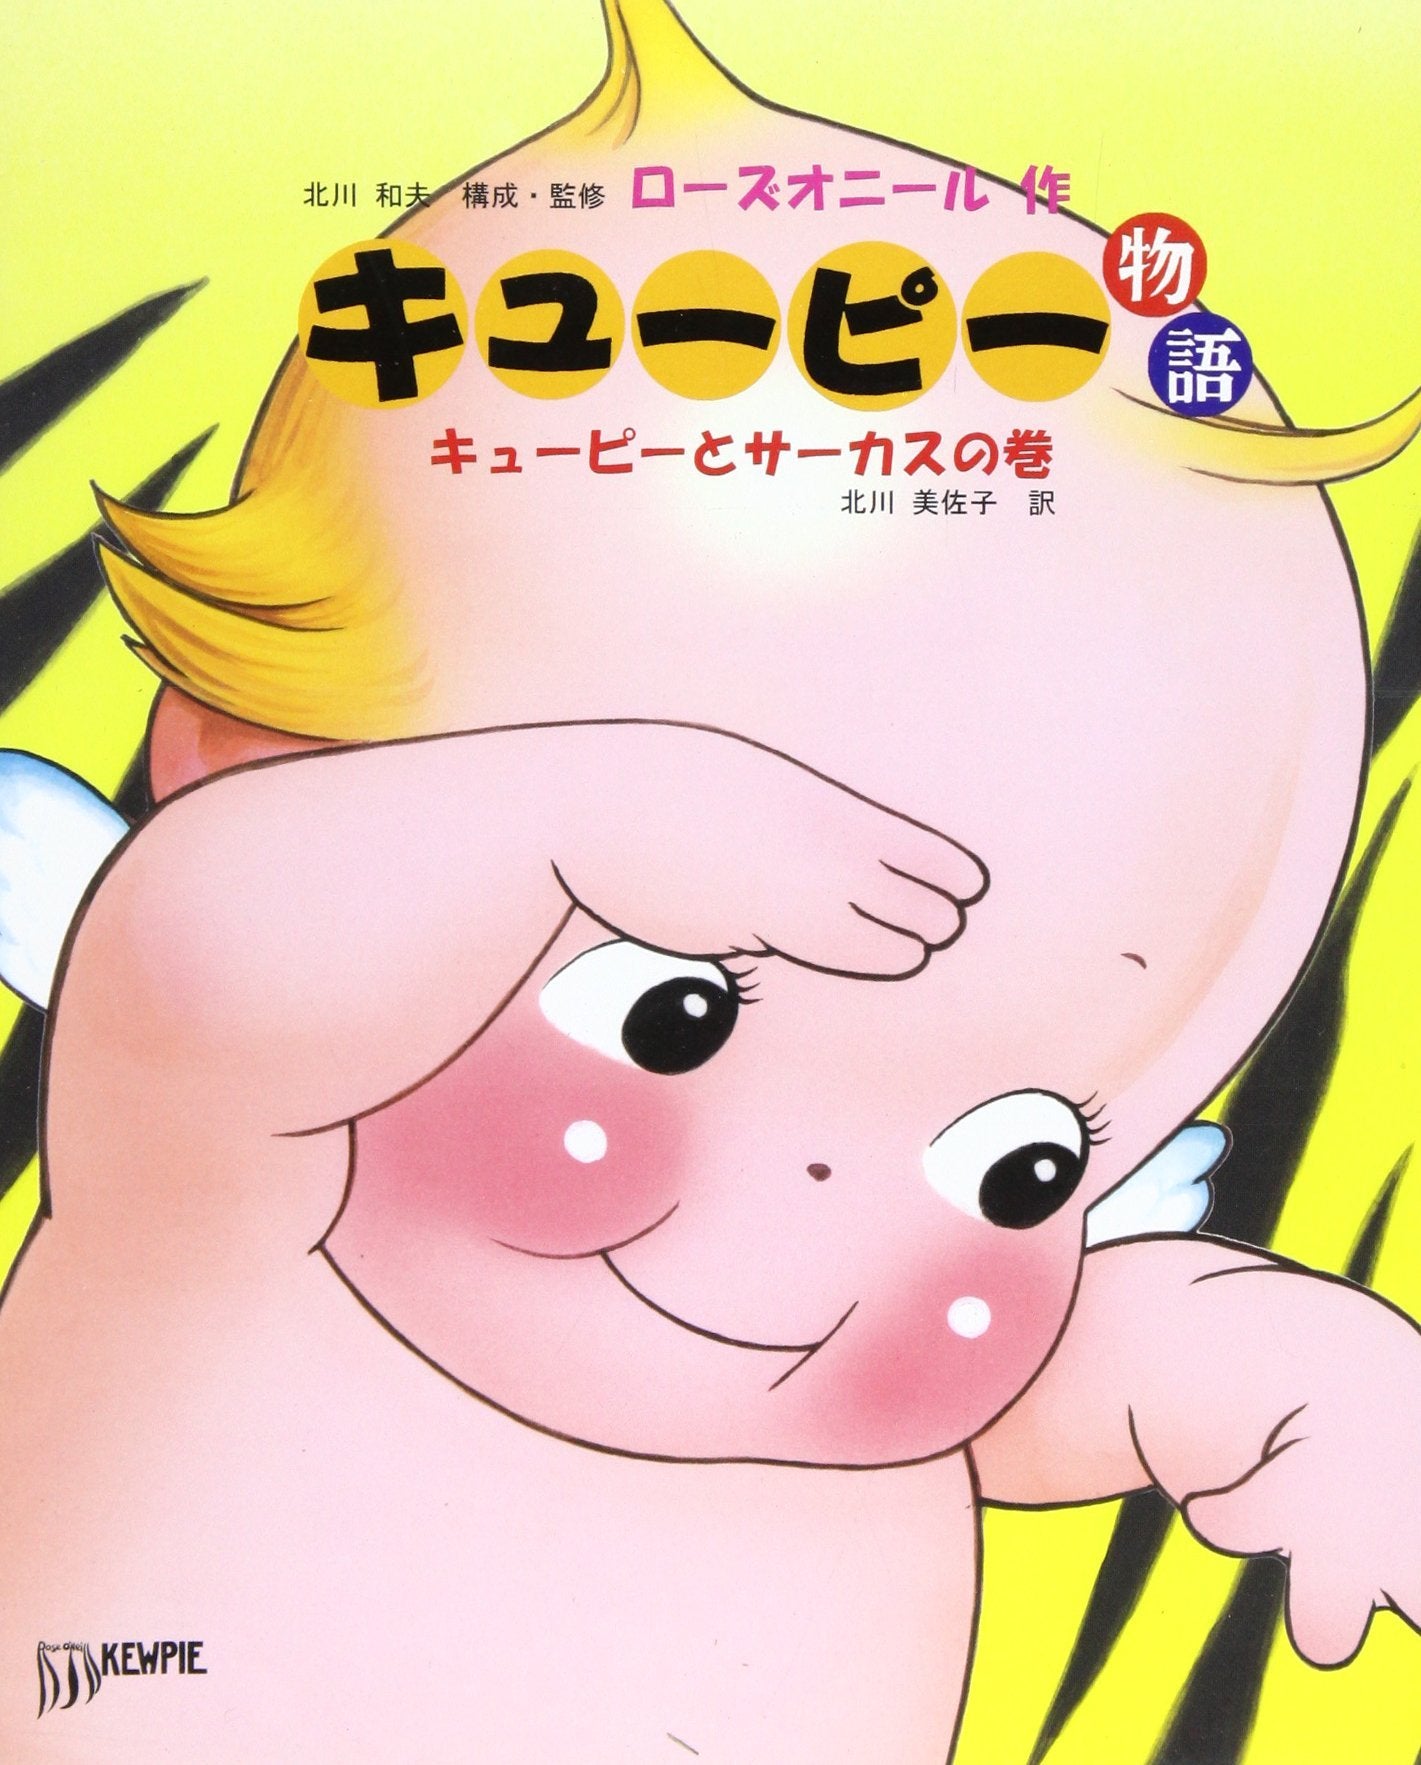 Kewpi 2 - キューピー物語 キューピーとサーカスの巻 (Japanese)